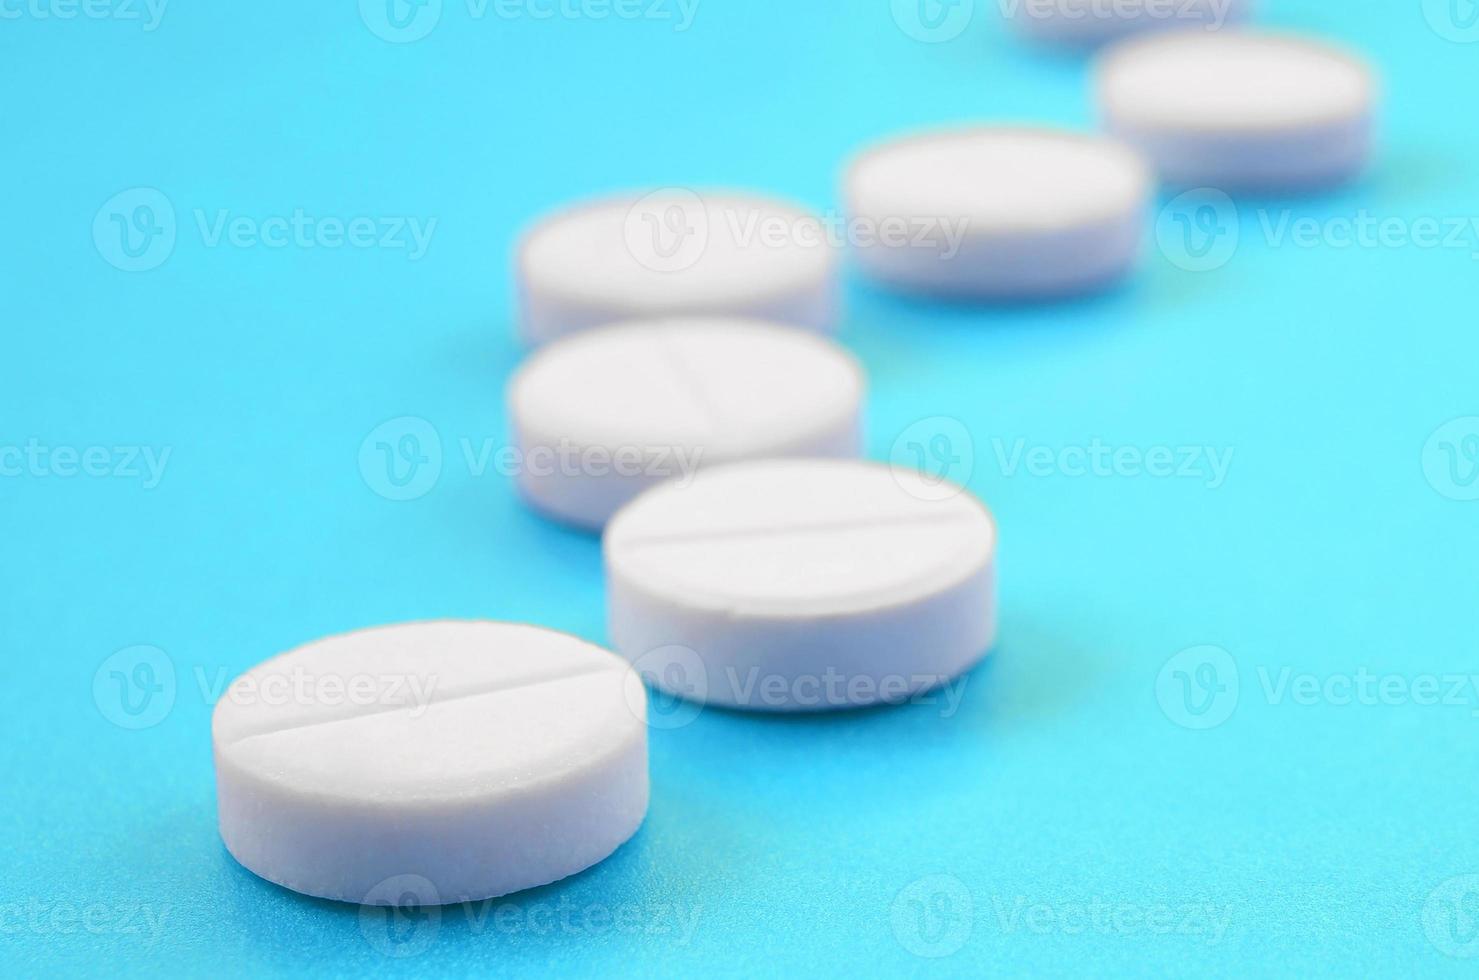 alguns comprimidos brancos repousam sobre uma superfície de fundo azul brilhante. imagem de fundo em tópicos médicos e farmacêuticos foto